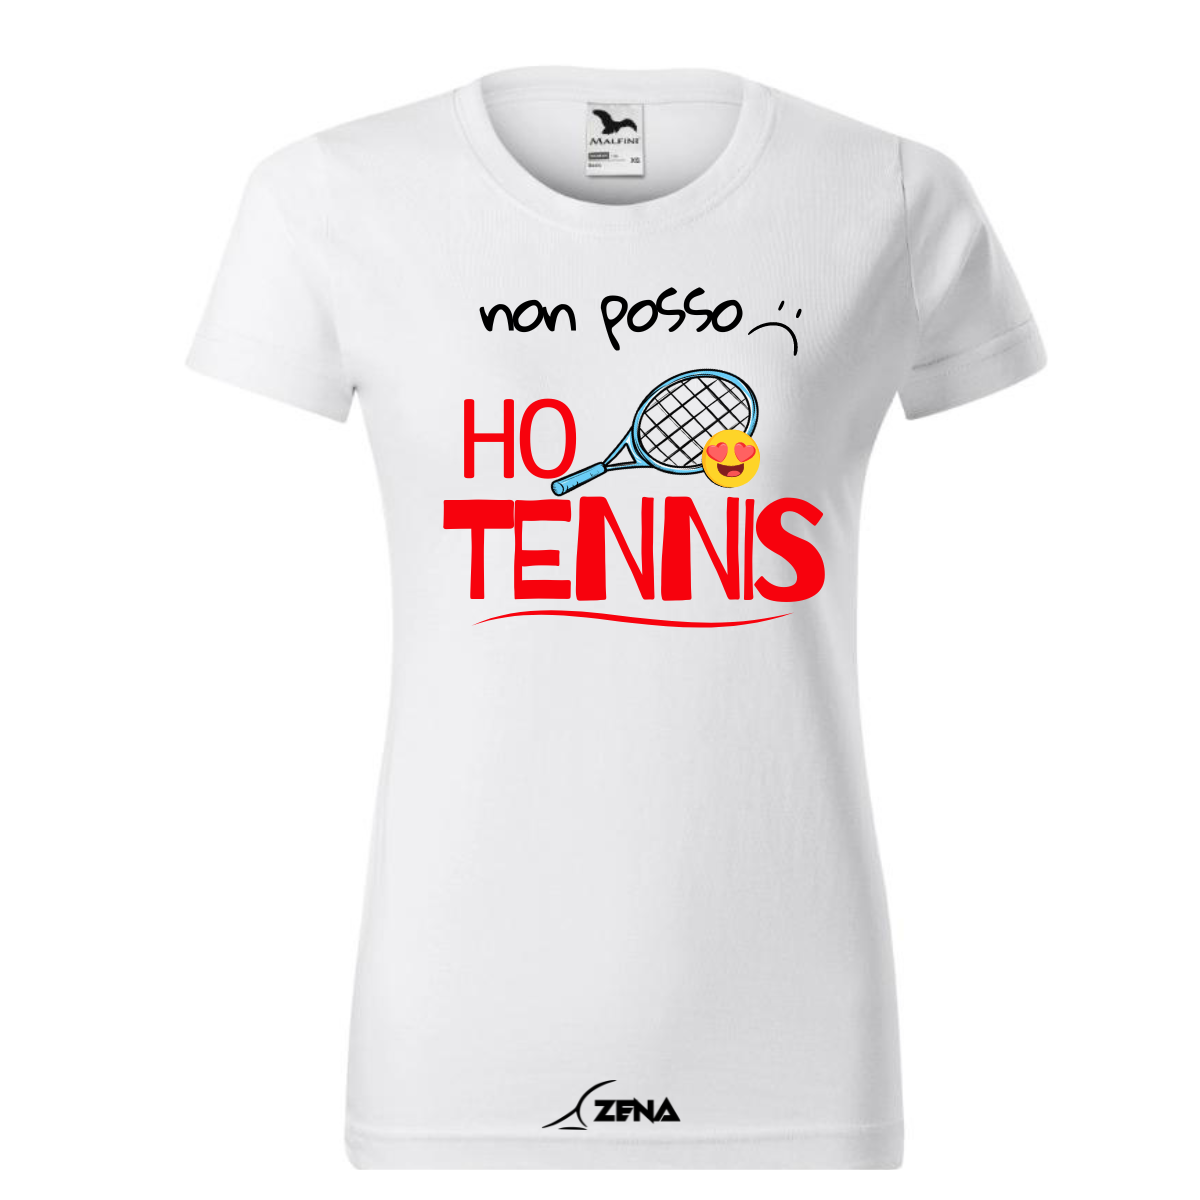 T-Shirt Cotone DONNA TENNIS - NON POSSO